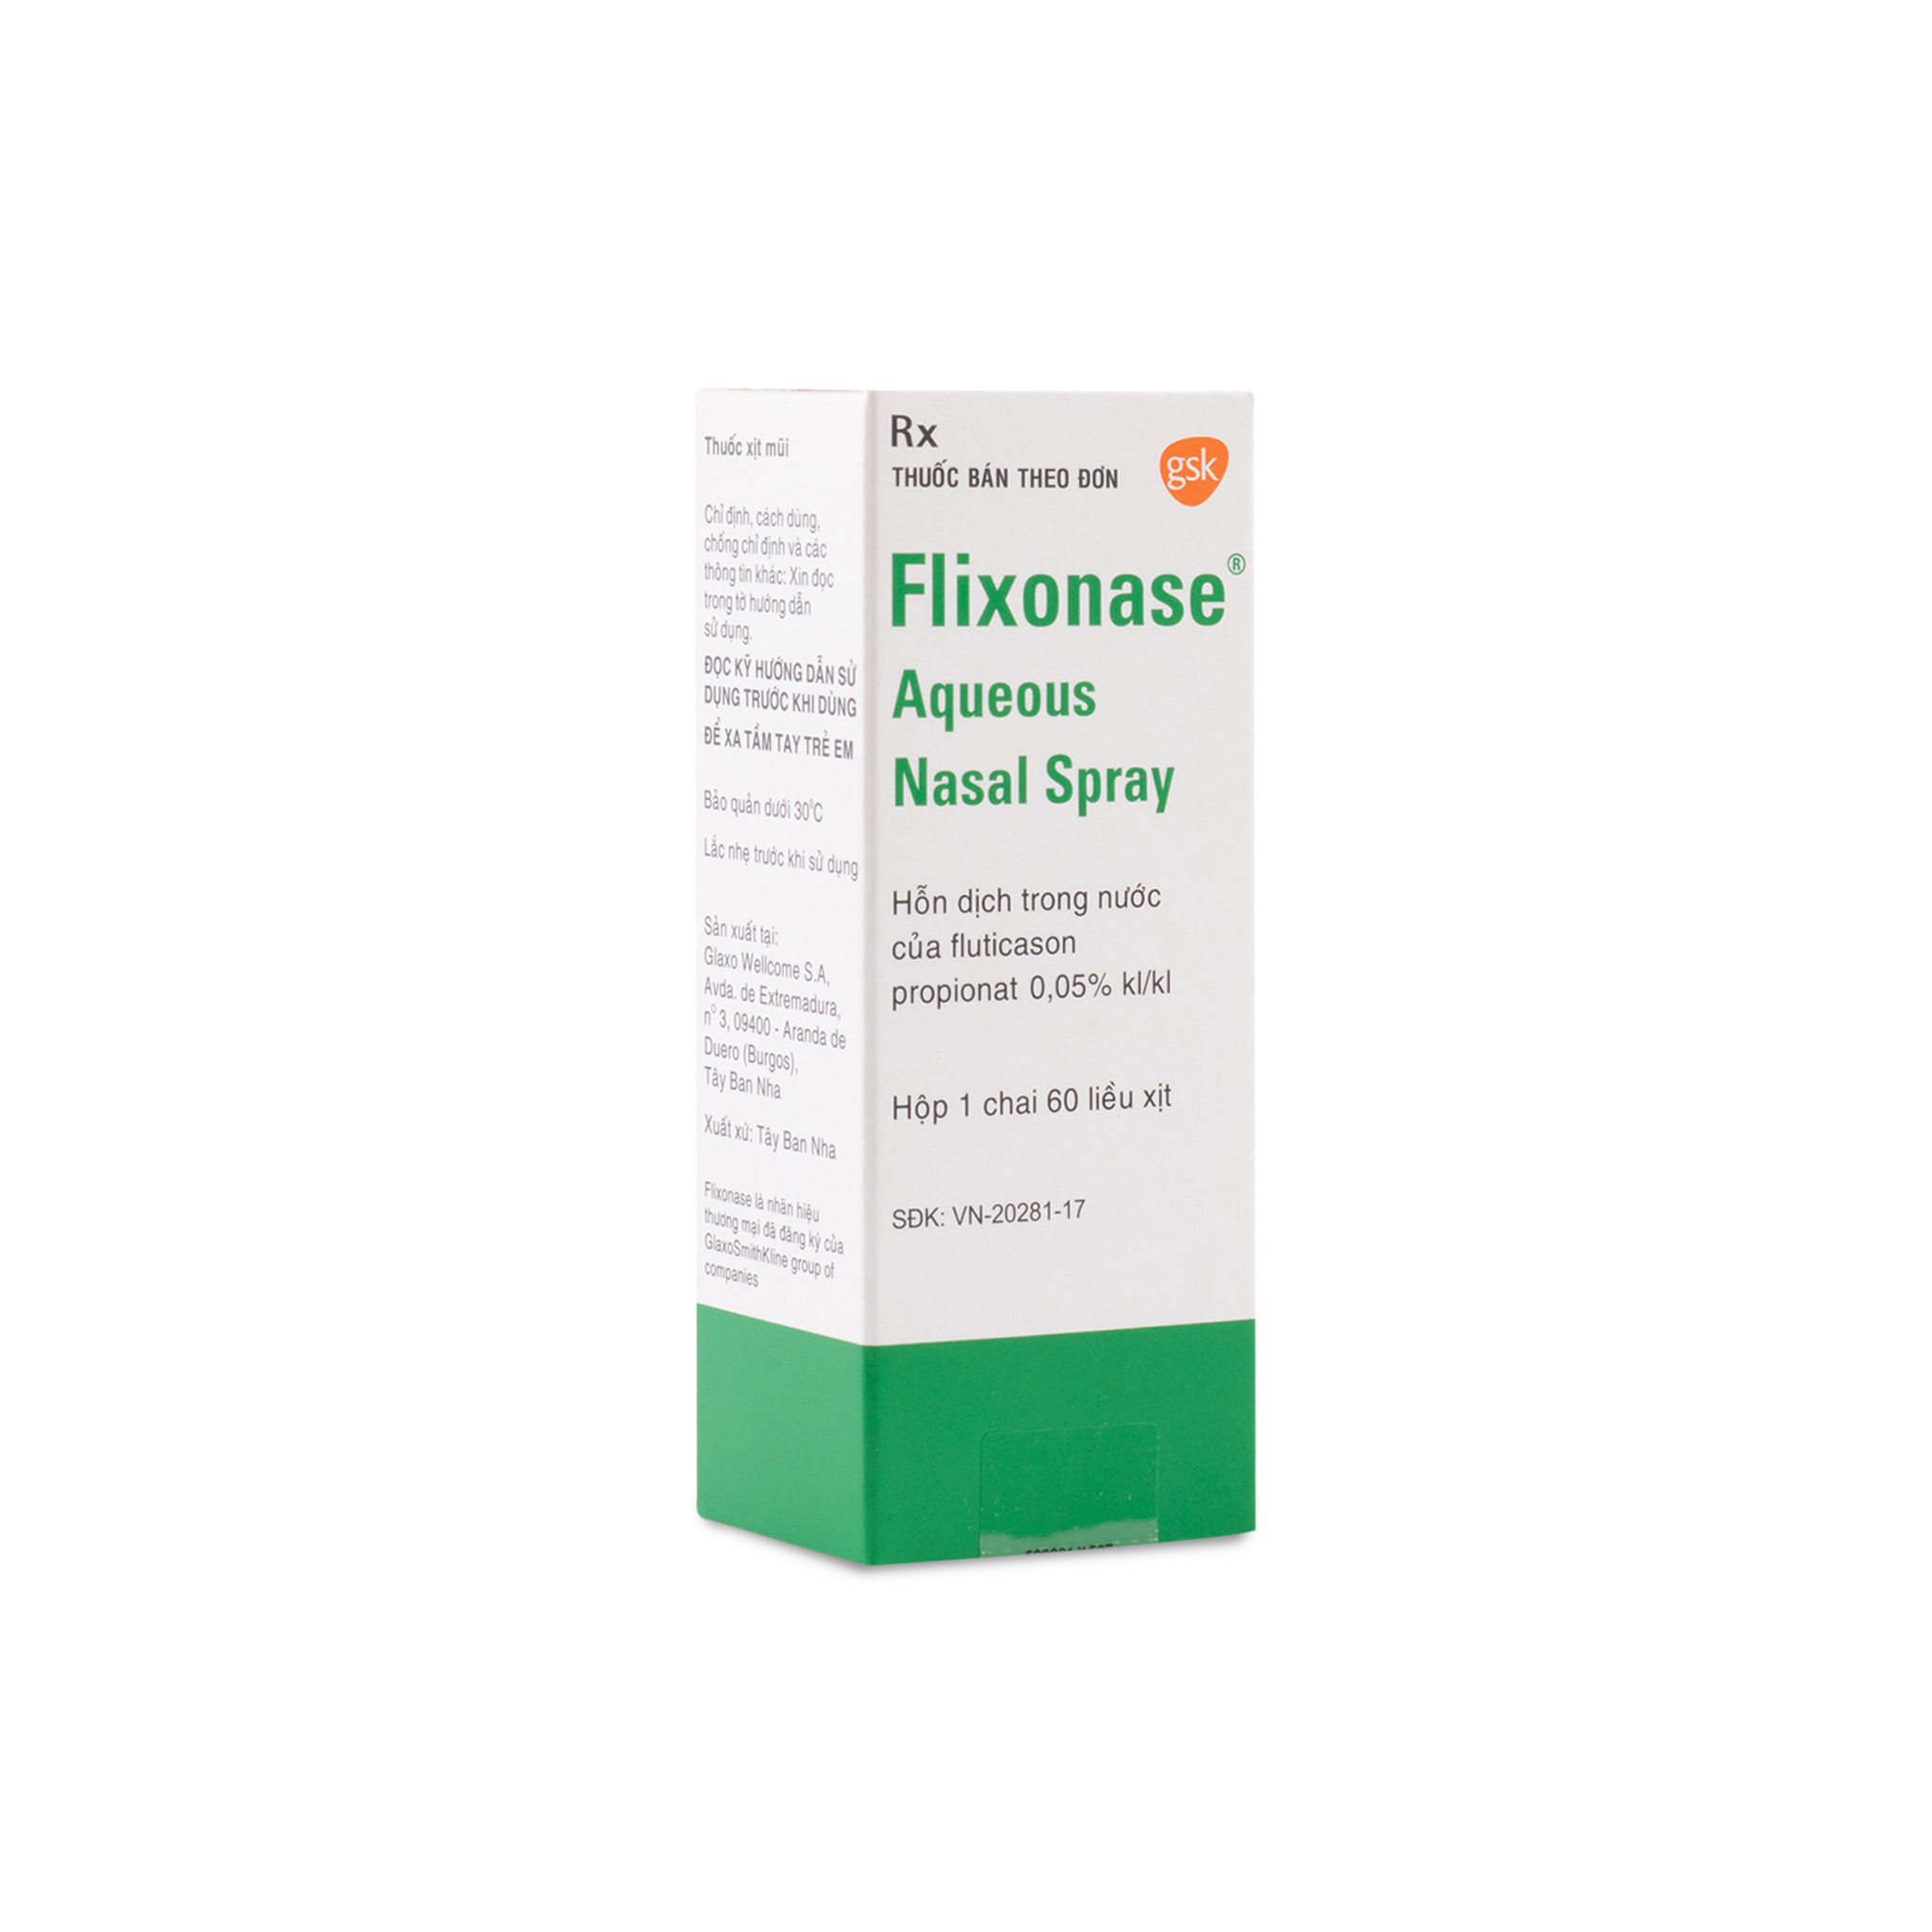 Có những người nào không nên sử dụng thuốc xịt mũi Flixonase?
